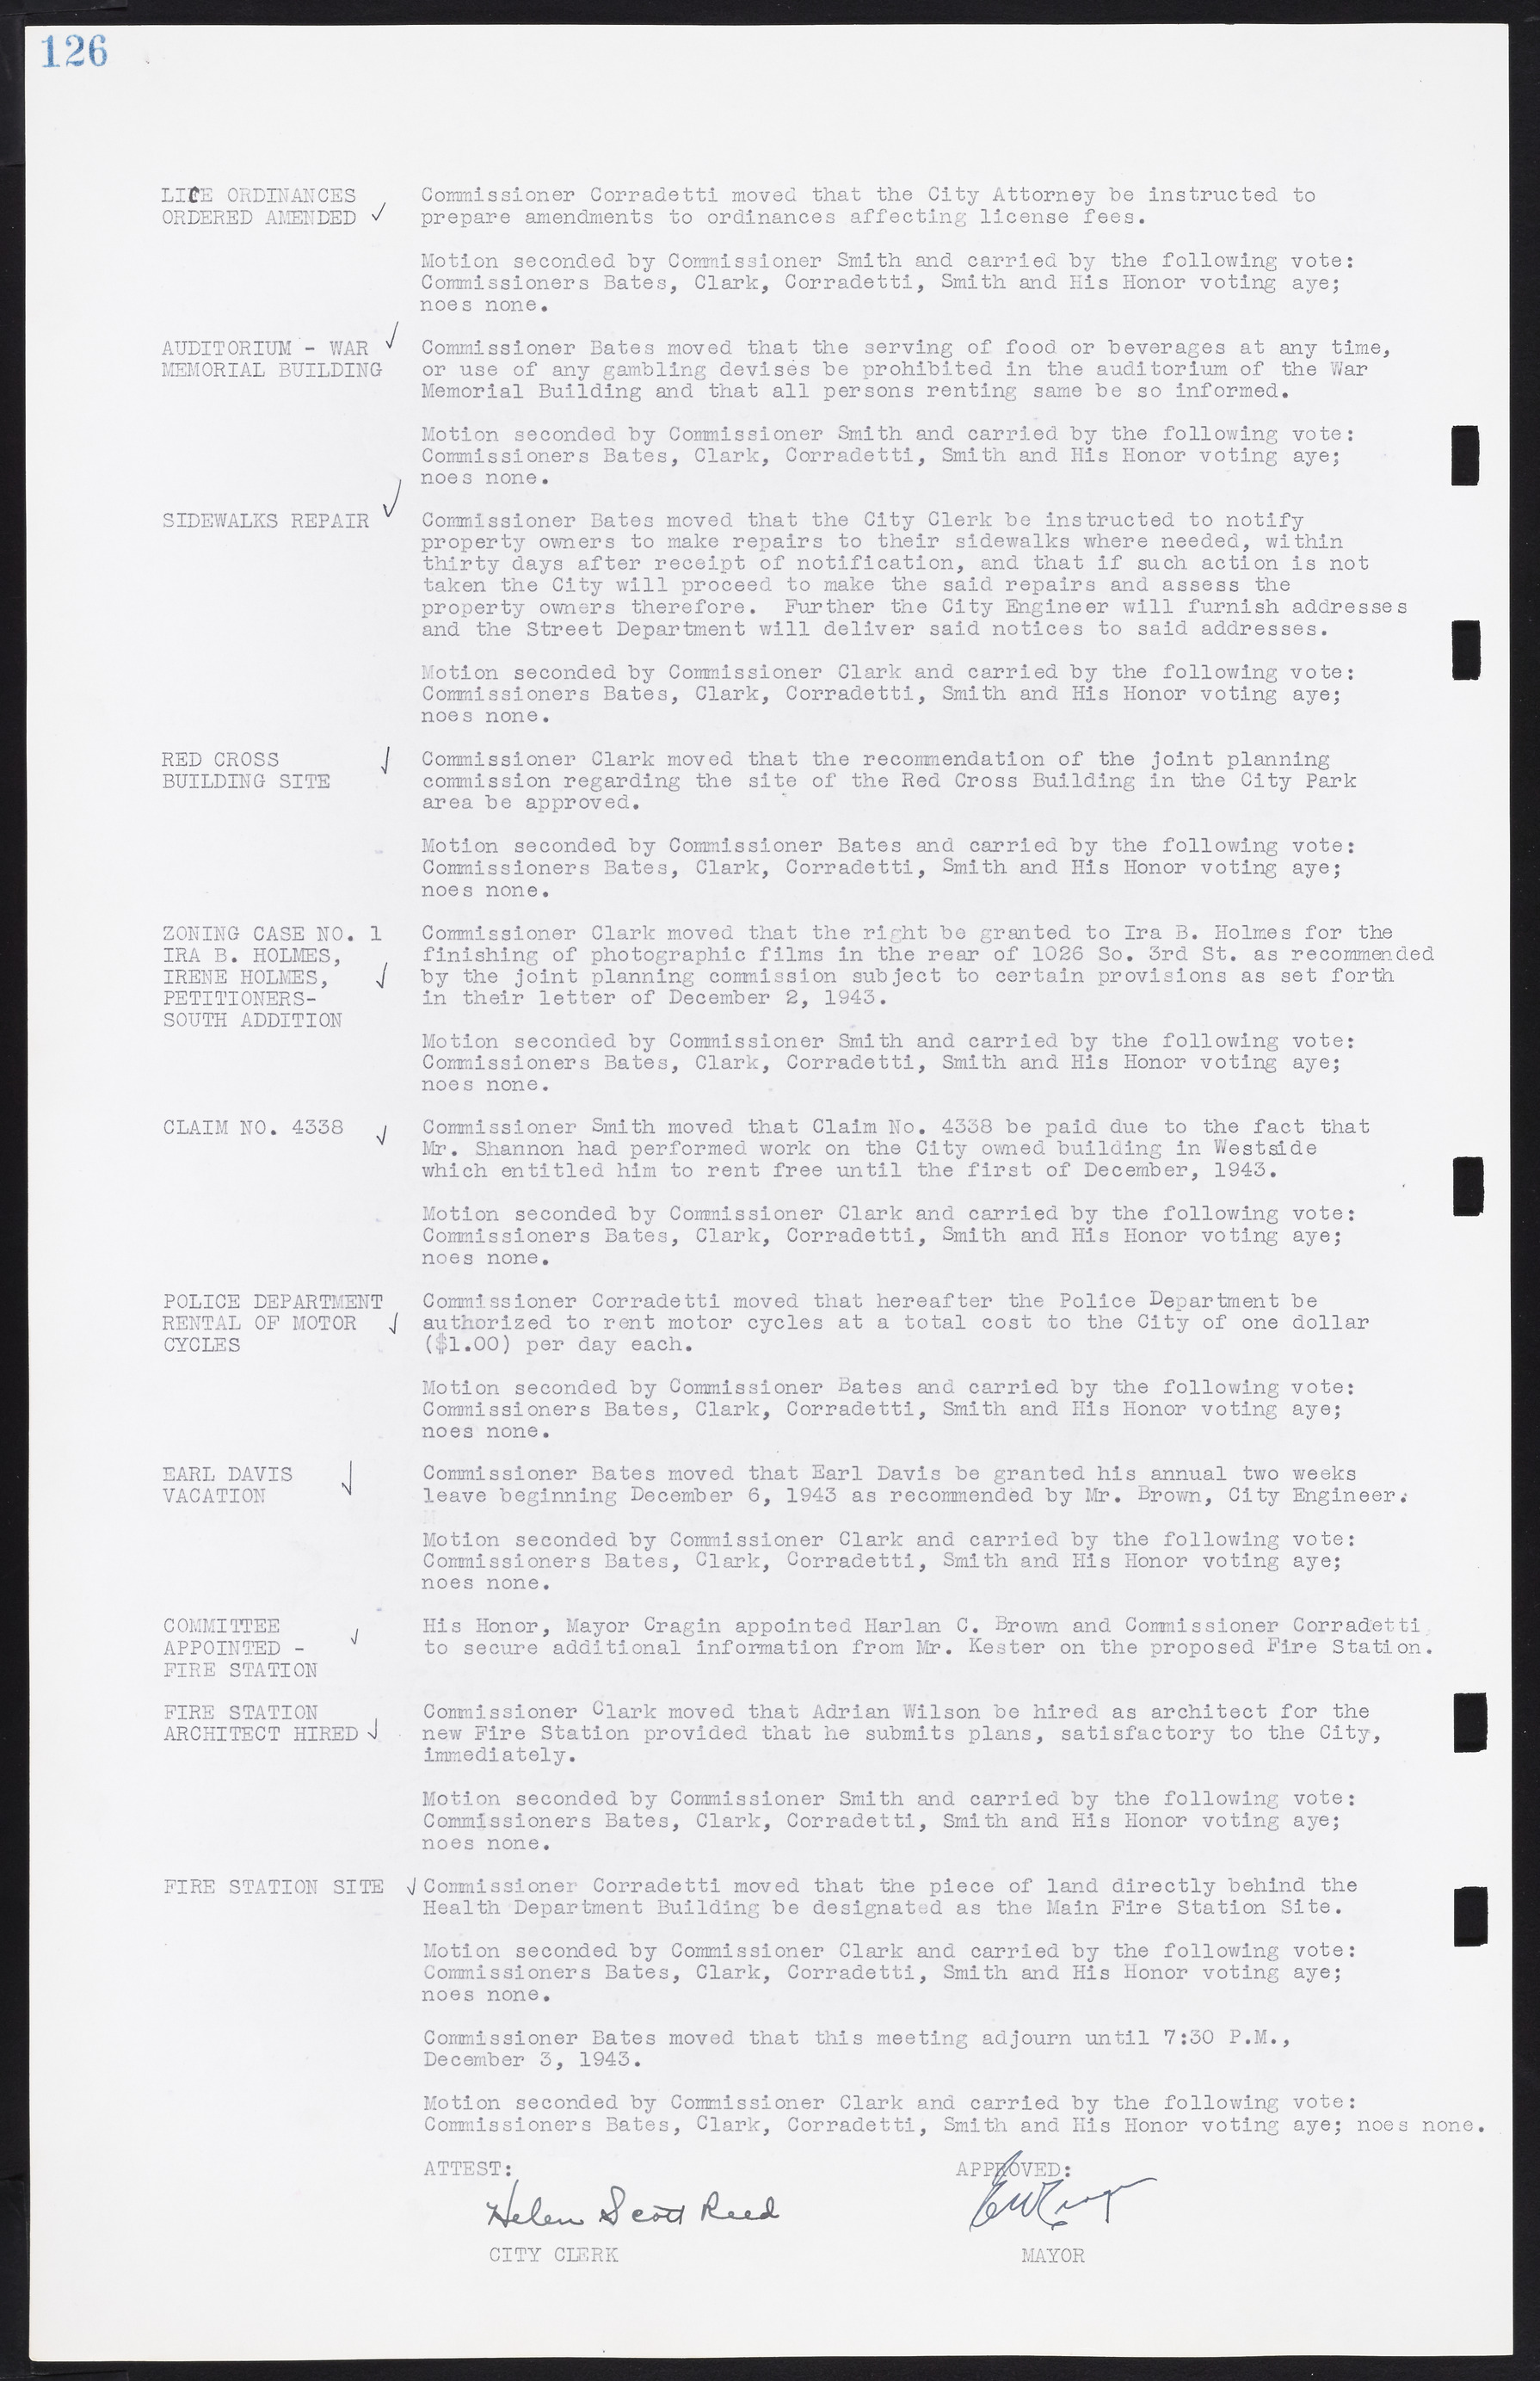 Las Vegas City Commission Minutes, August 11, 1942 to December 30, 1946, lvc000005-140